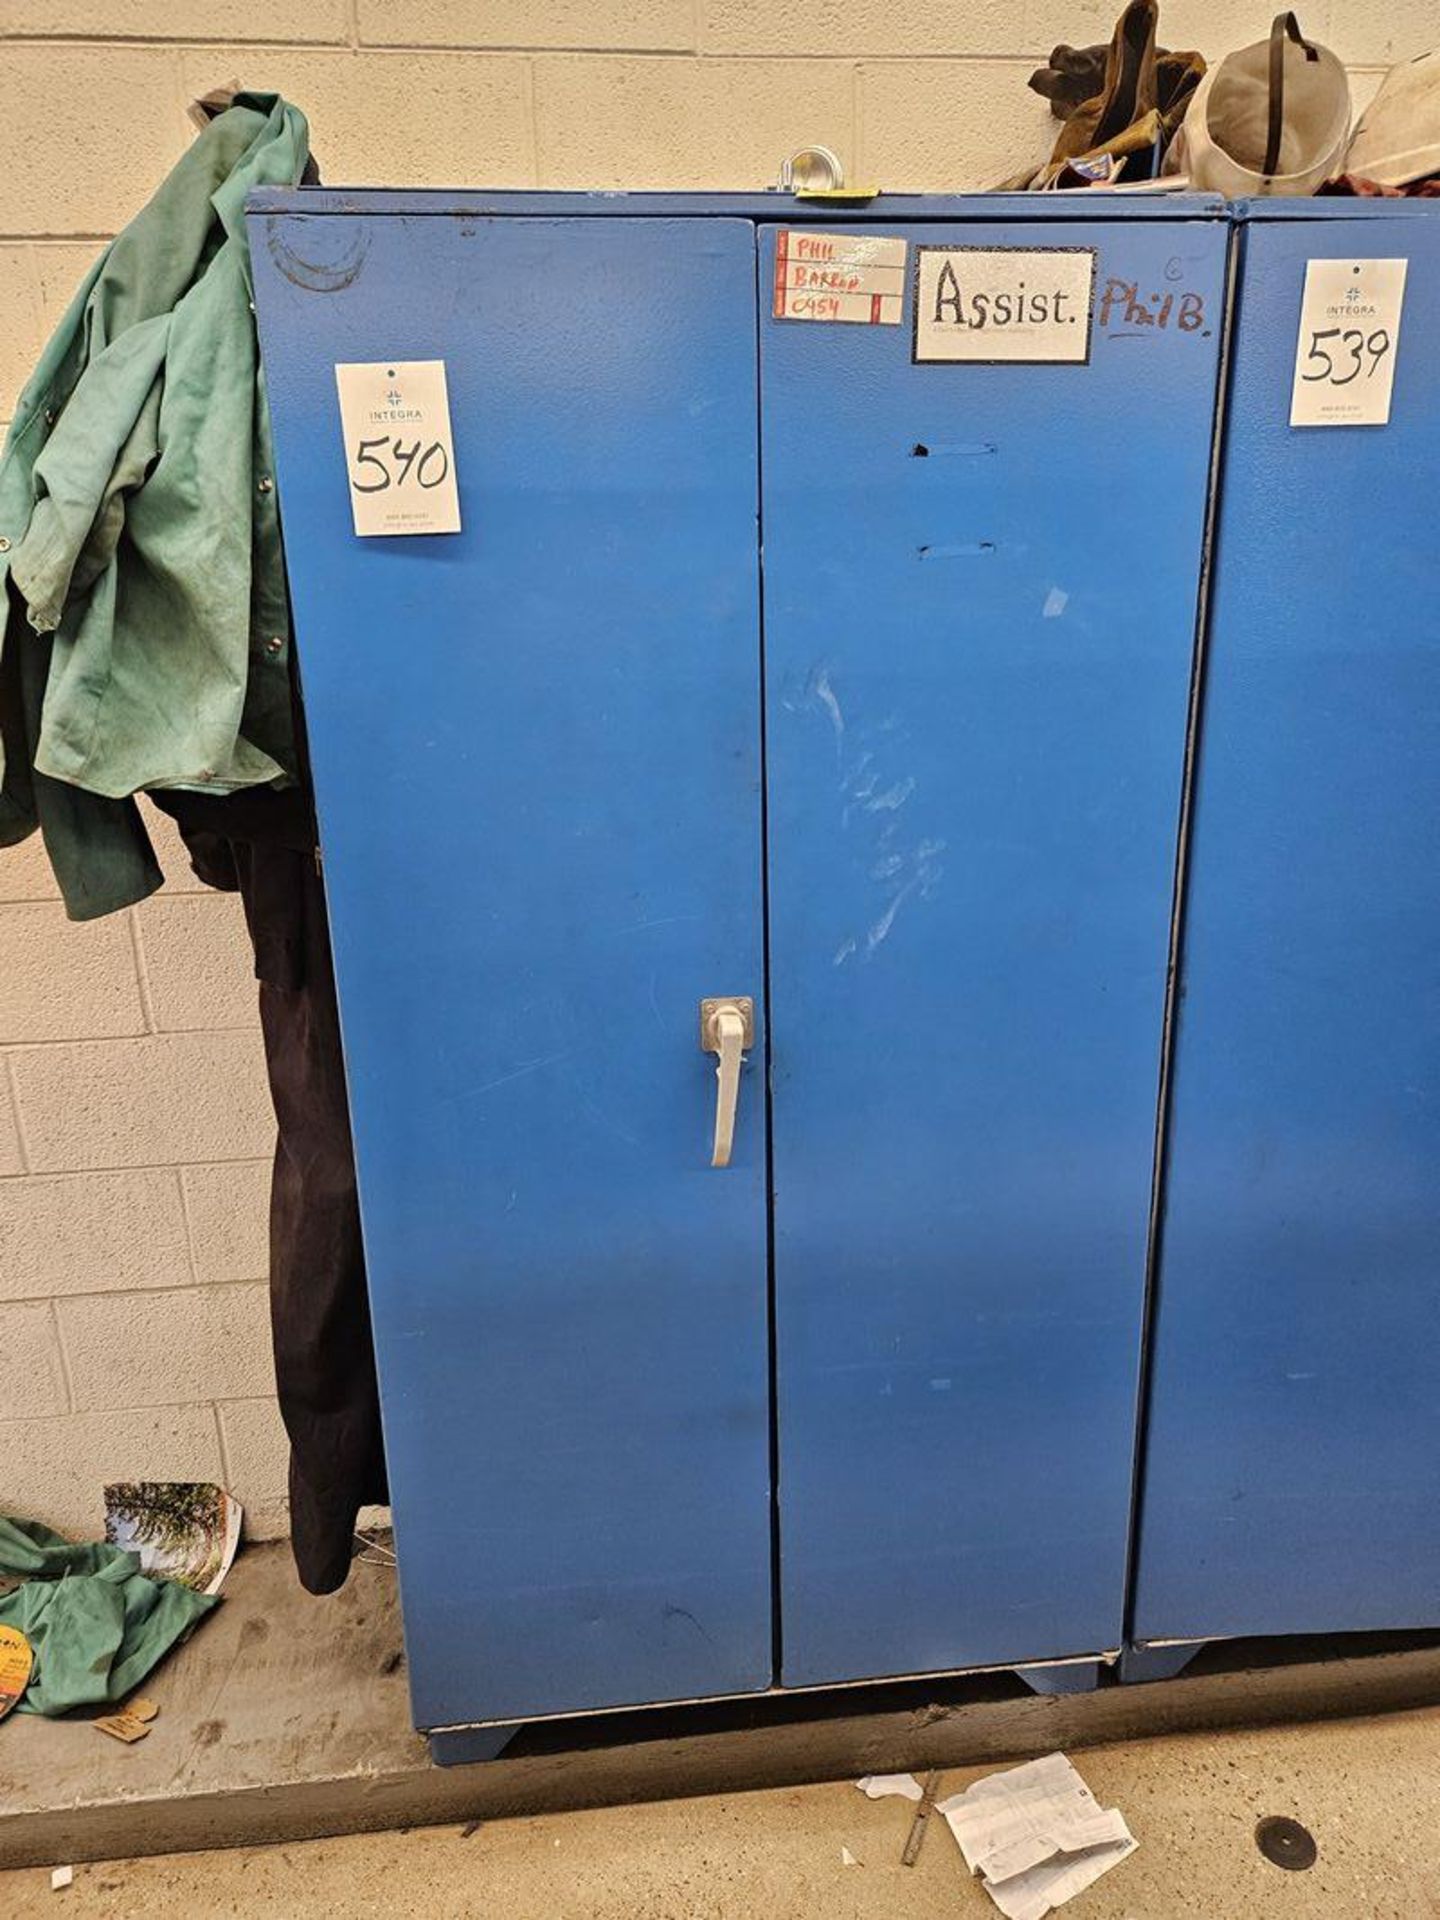 2-Door Steel Cabinet 36" x 18" x 72" High